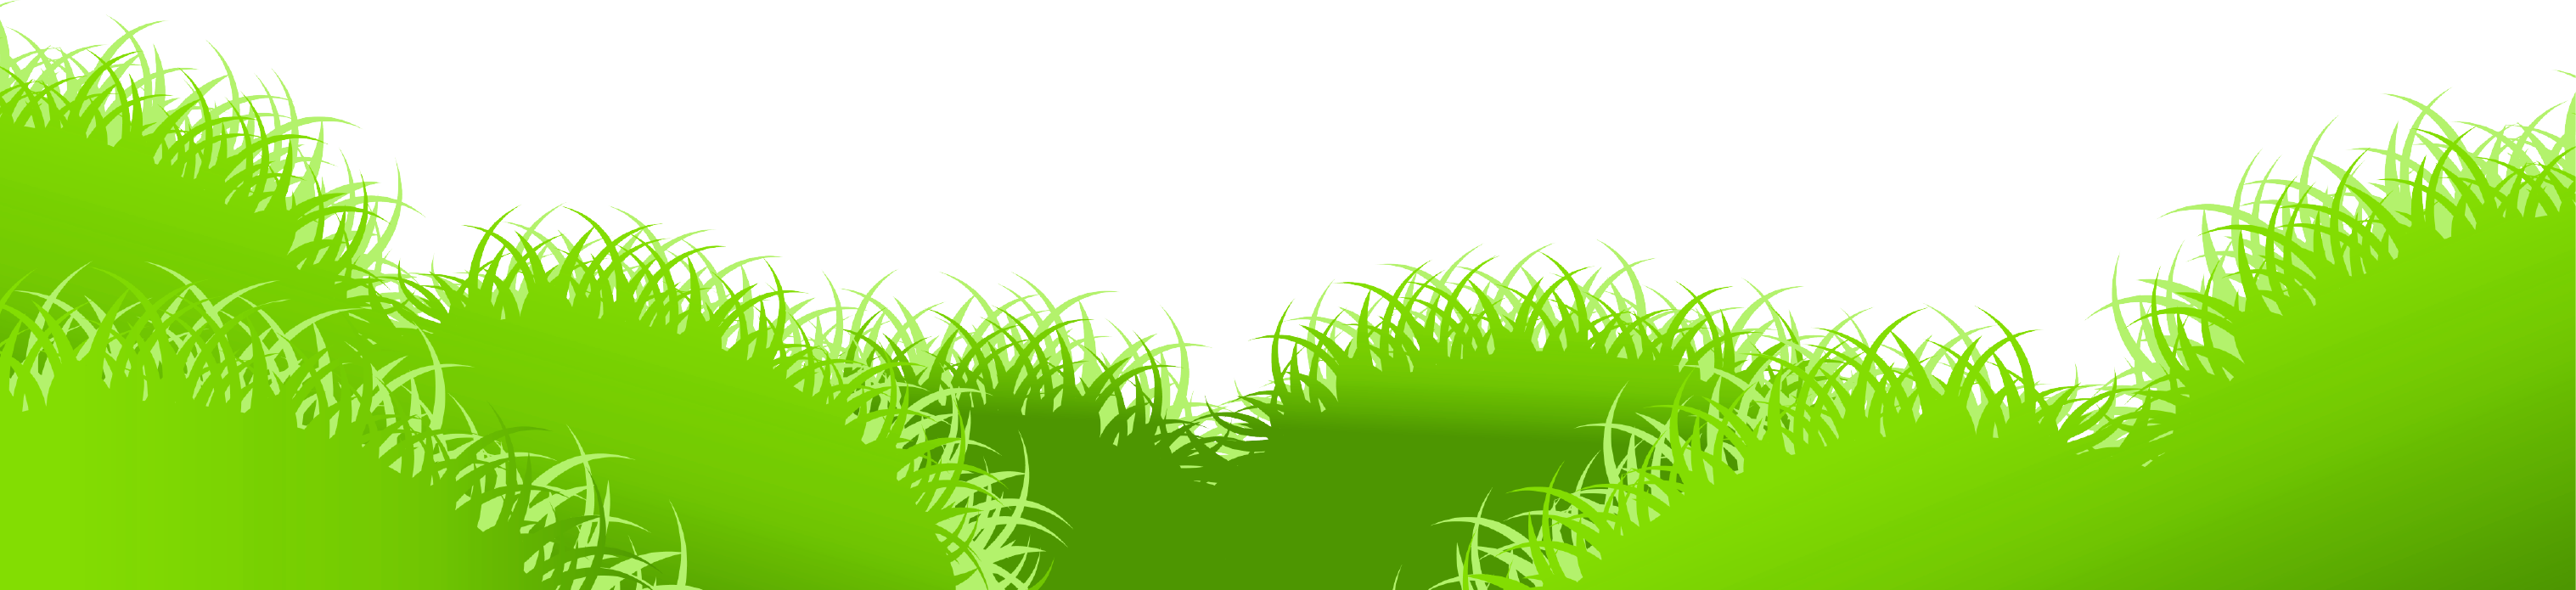 nature clipart grass